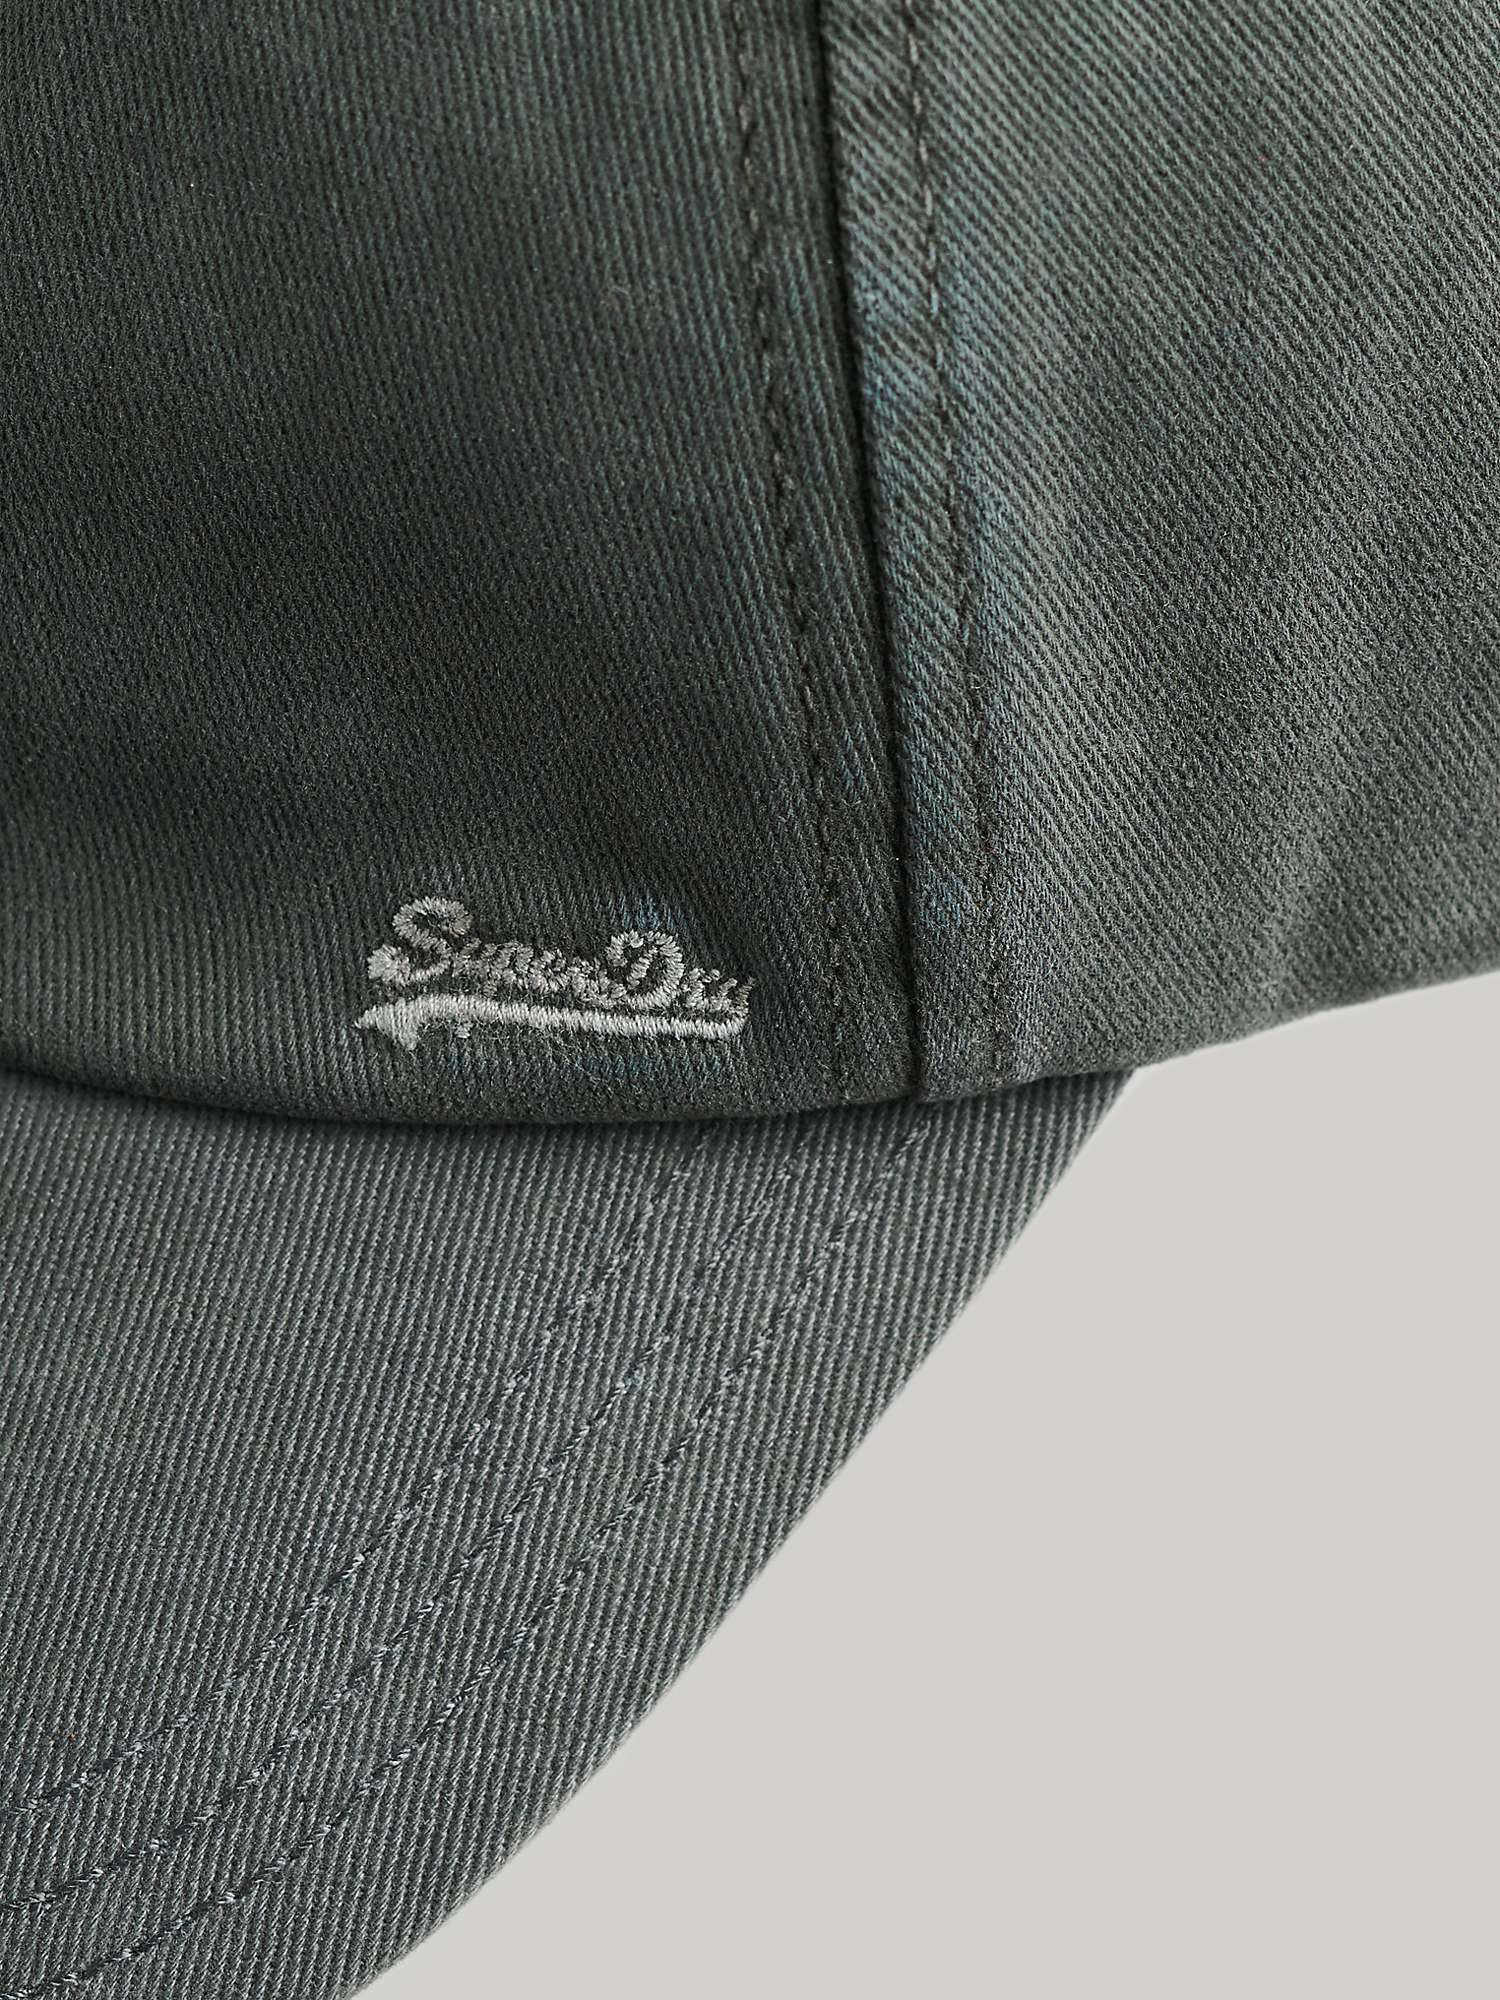 Buy Superdry Vintage Embroidered Cap Online at johnlewis.com